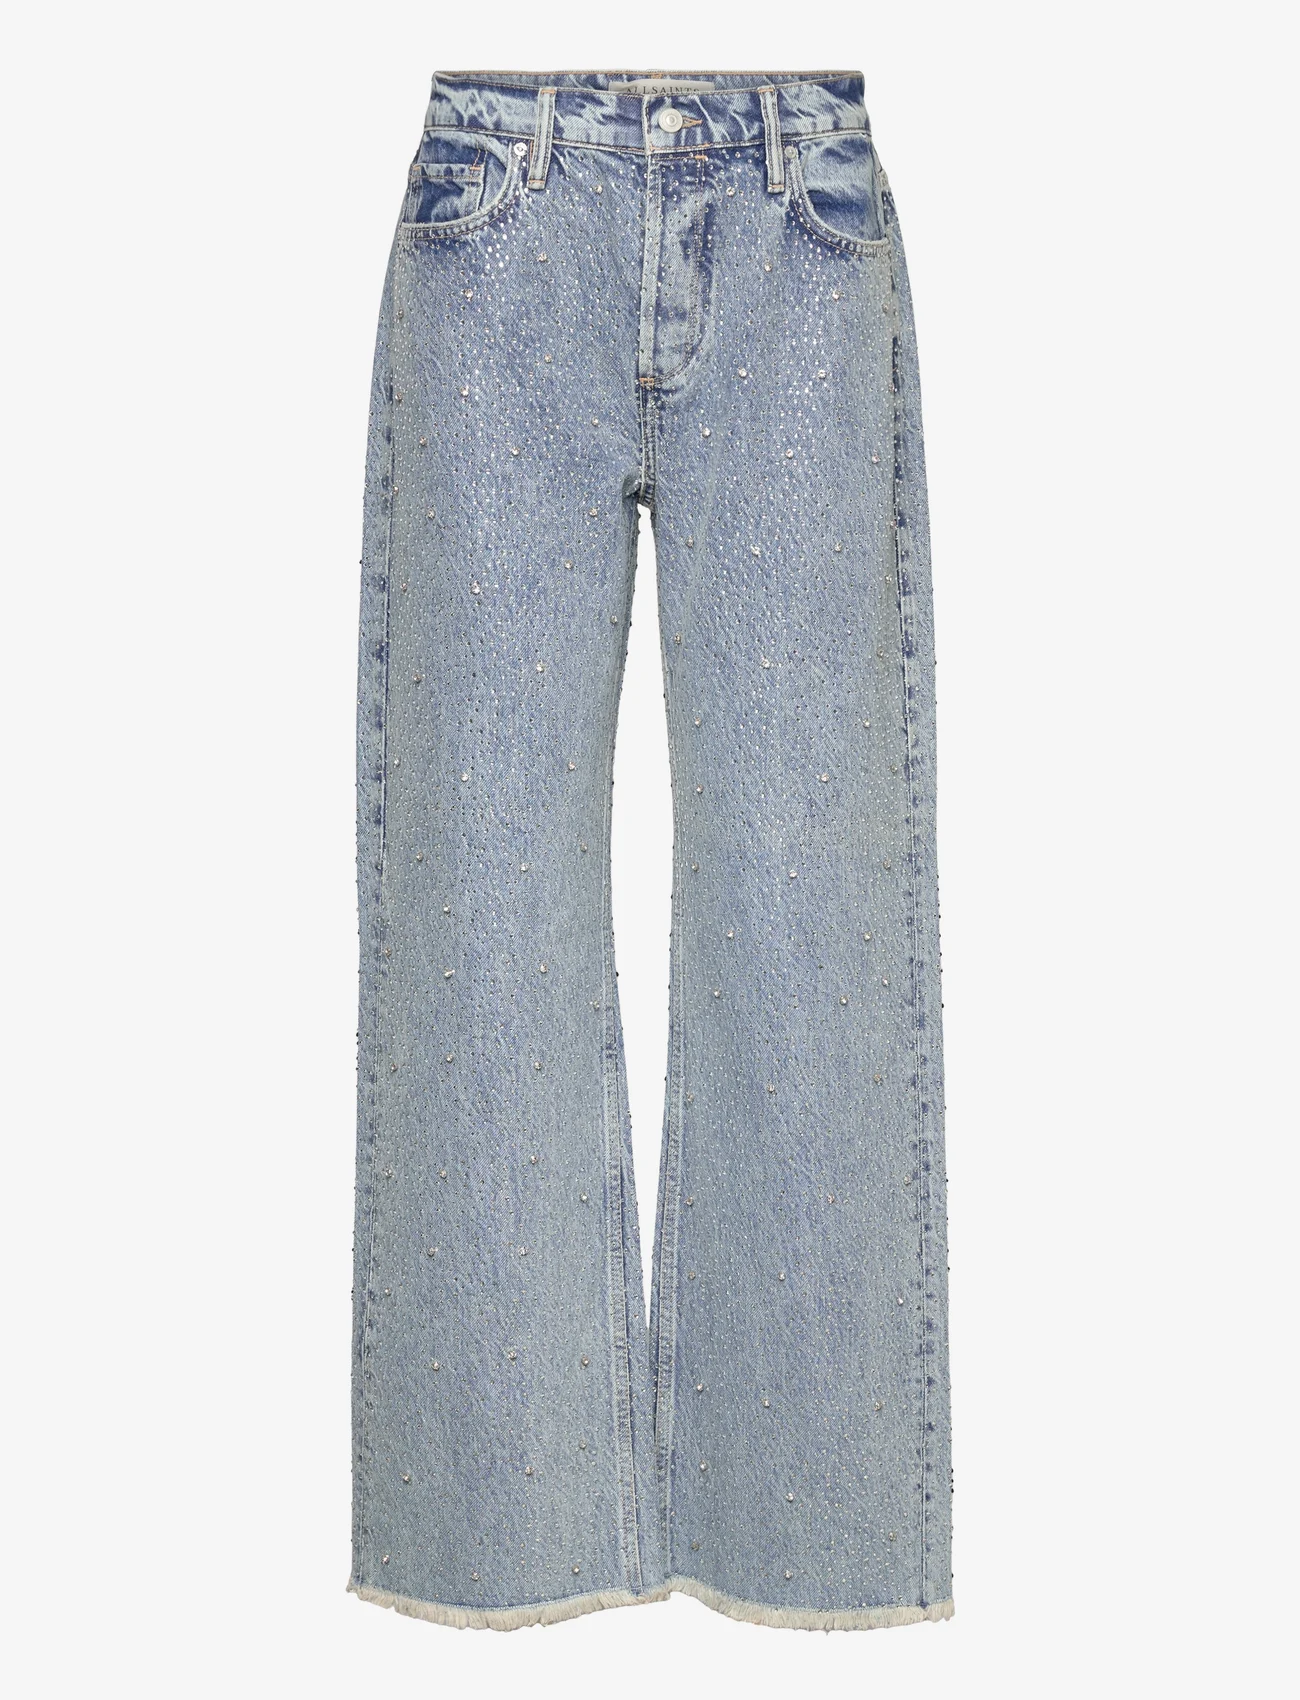 AllSaints - WENDEL CRYSTAL JEANS - brede jeans - light indigo - 0